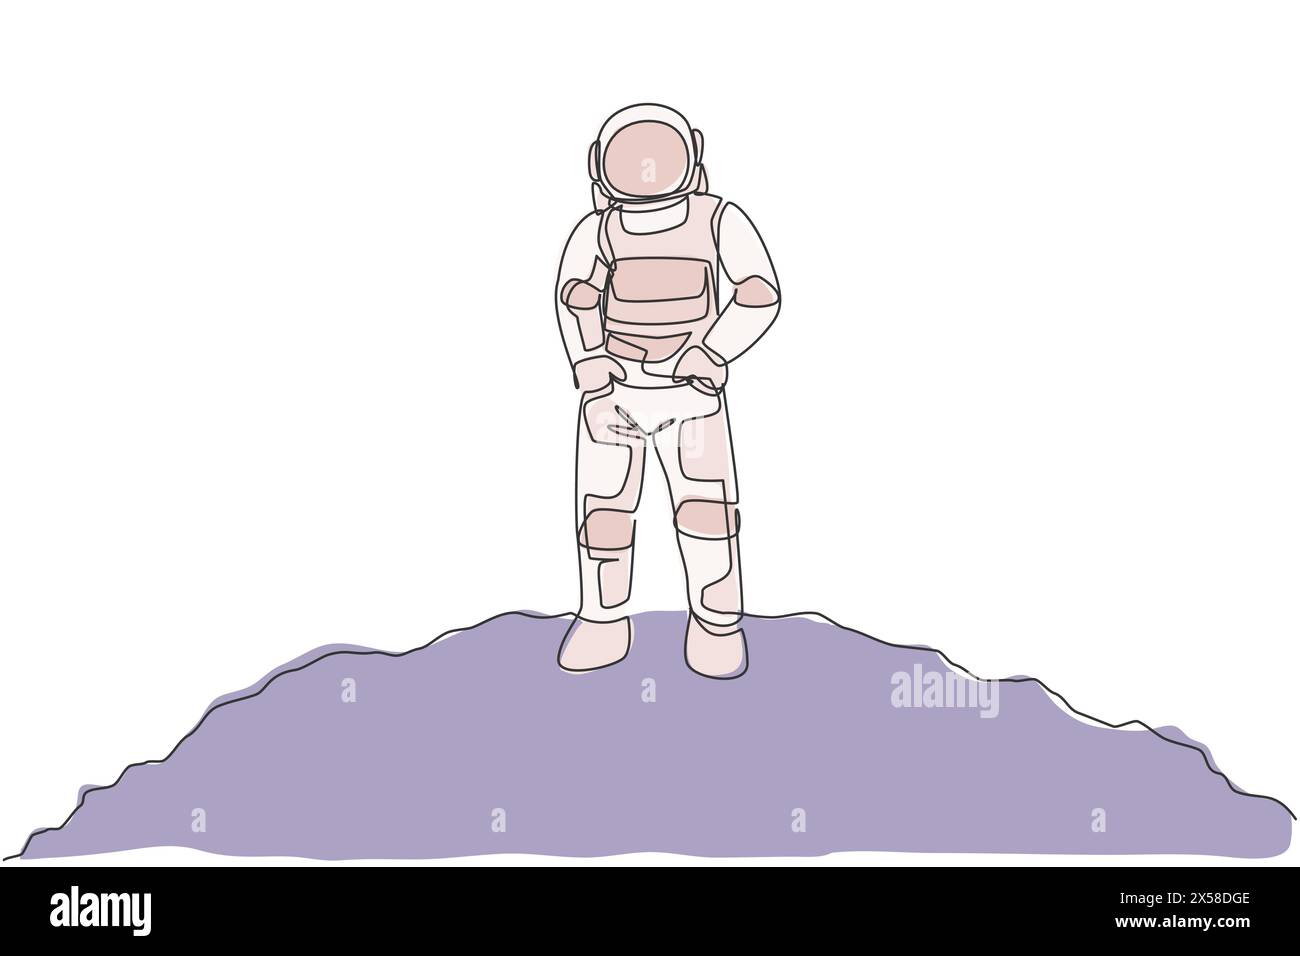 Eine durchgehende Linienzeichnung eines jungen Raumfahrers auf Raumanzug legte Hände in Taschen in die Mondoberfläche. Astronaut-Geschäftsbüro mit Tiefenraumkonzept. Dy Stock Vektor